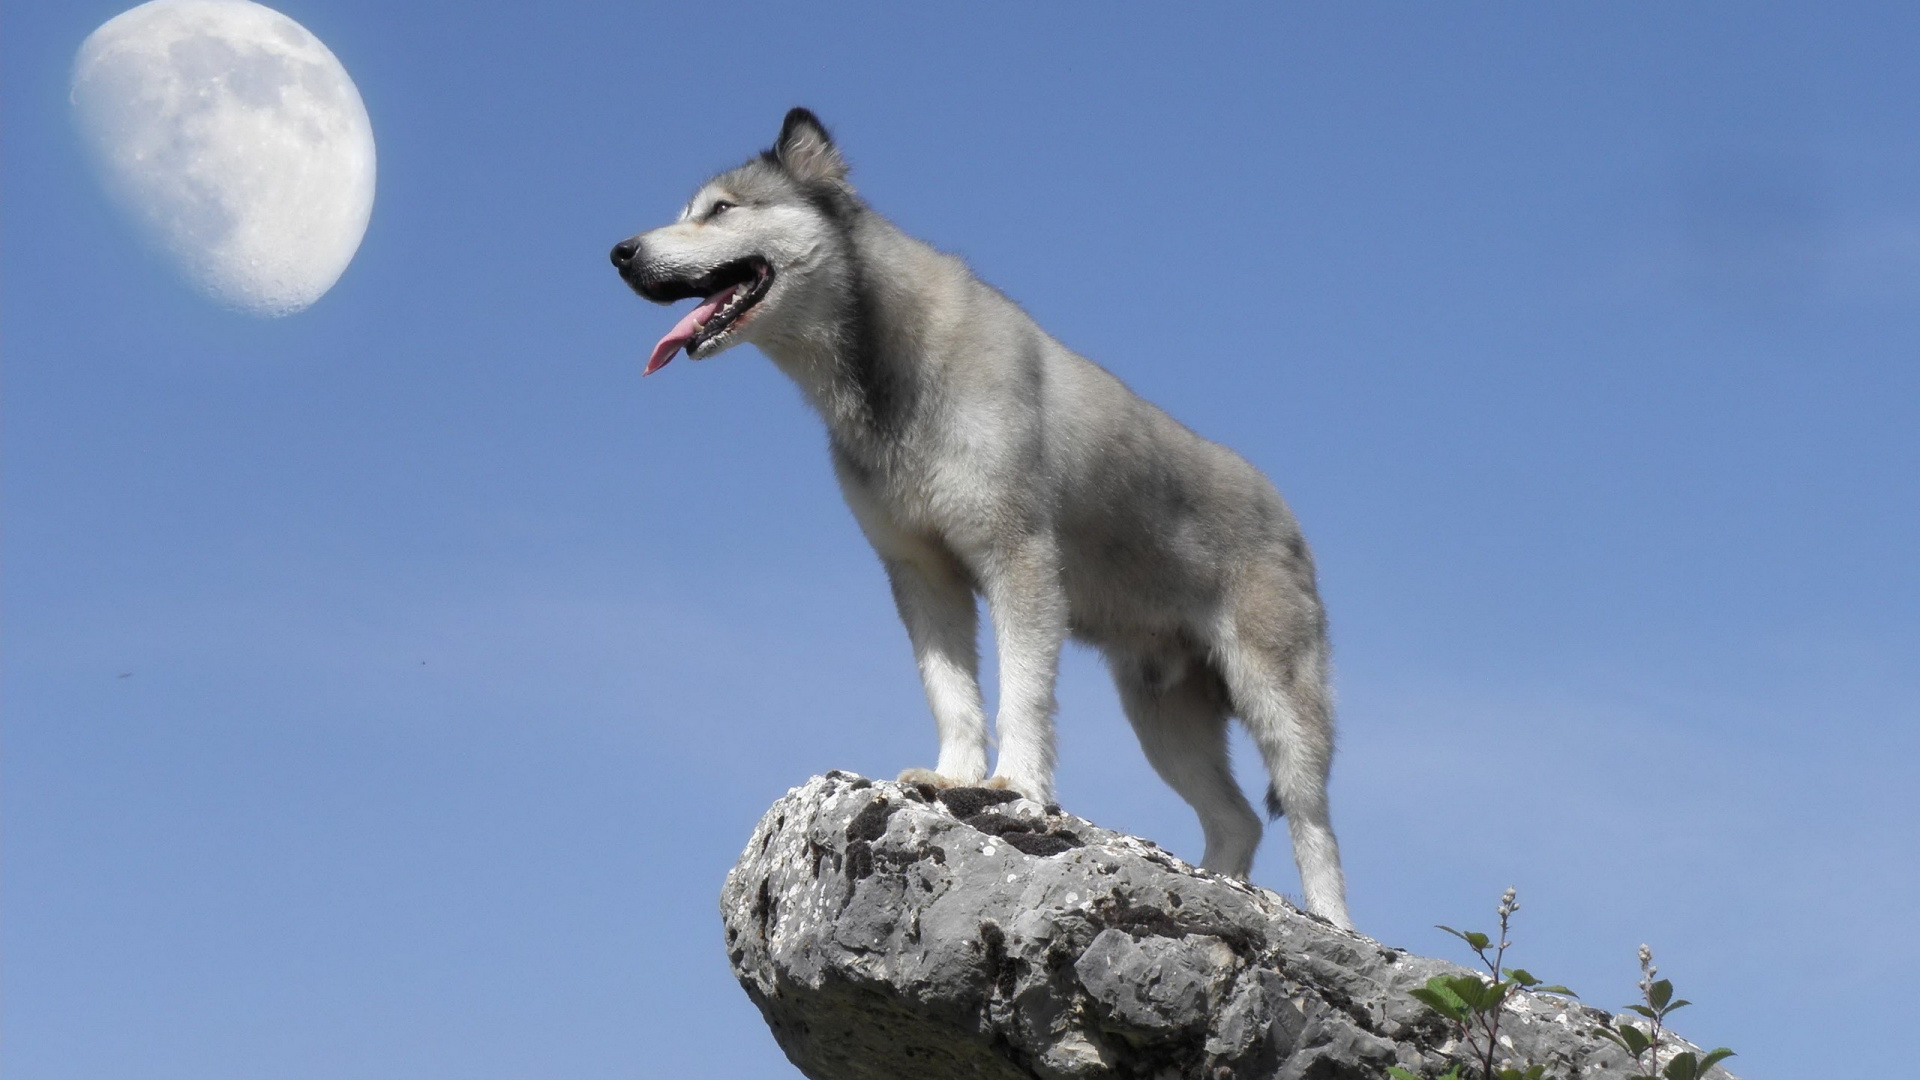 萨哈林赫斯基, 北方的因纽特人的狗, Saarloos那只狼狗, 捷克斯洛伐克那只狼狗, 品种的狗 壁纸 1920x1080 允许